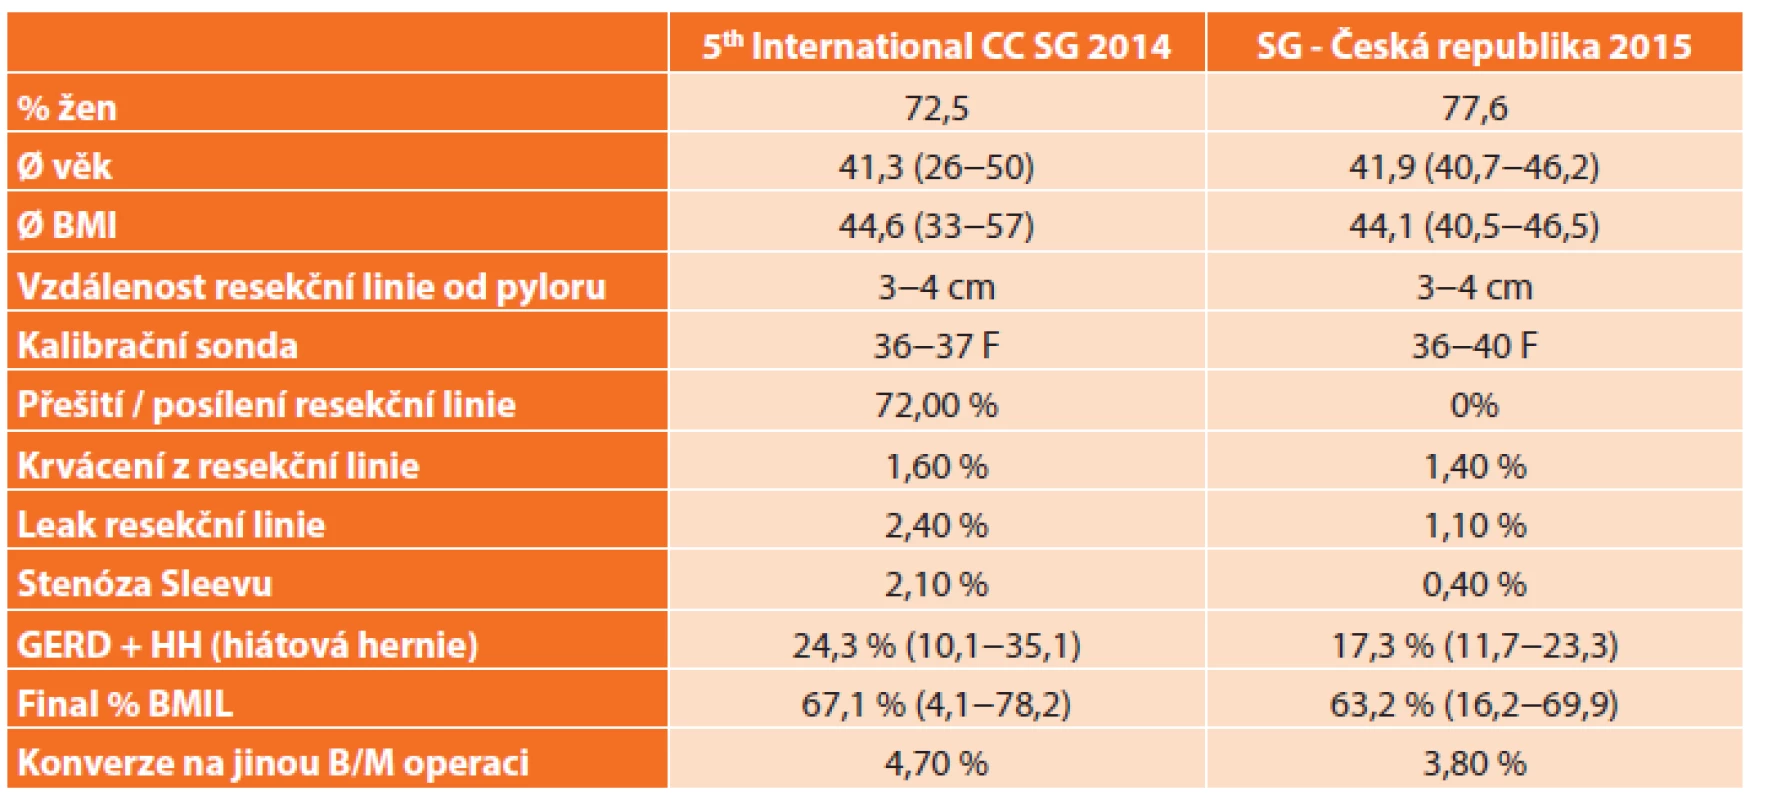 Porovnání výsledků 5th International CC SG 2014 a výsledků v ČR 2015
Tab. 2: Comparison of results from the 5th International CCSG 2014 with results in the CR 2015